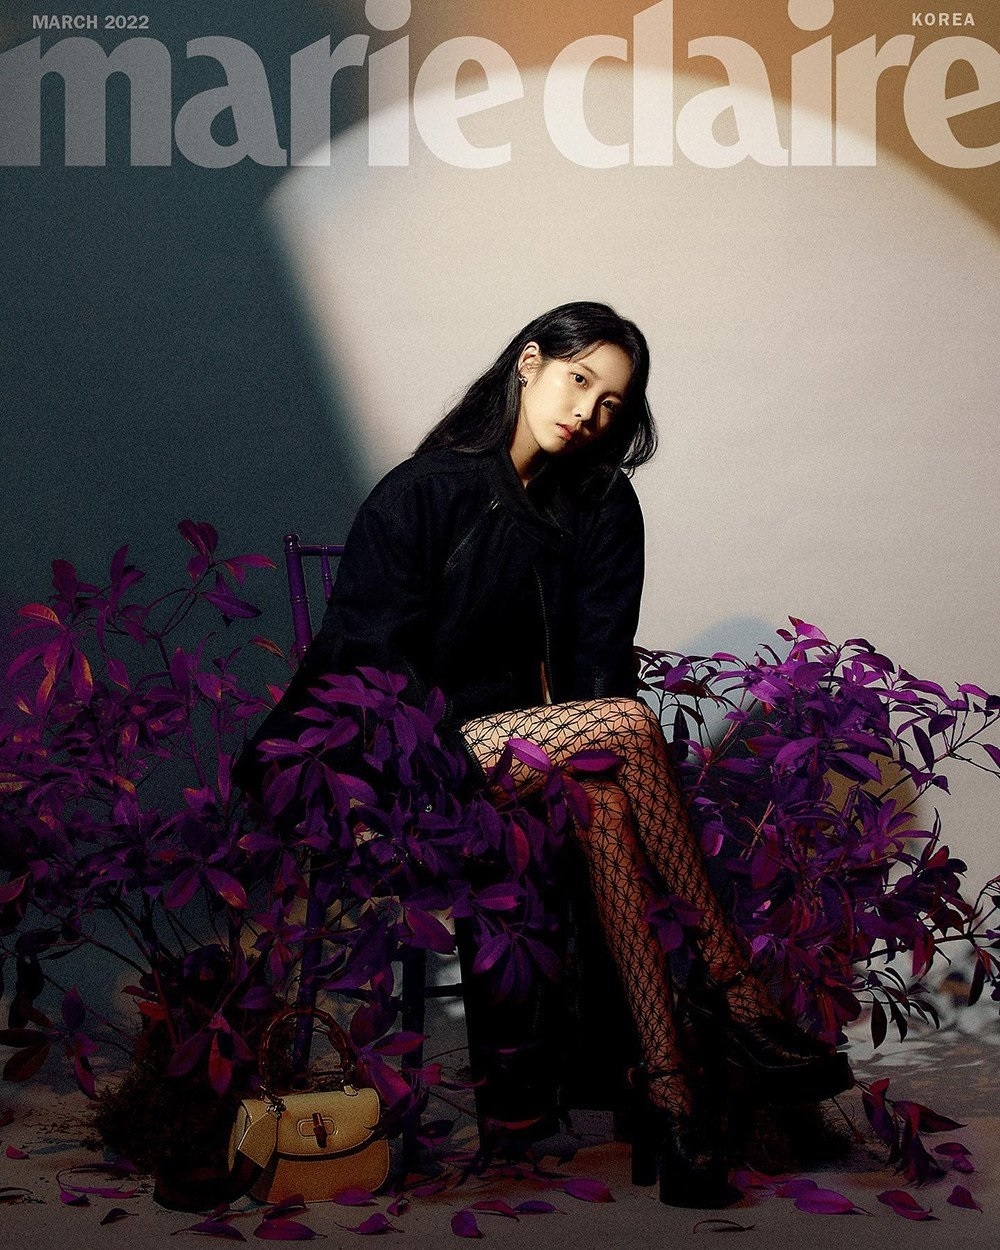 Sao Hàn ngày 16/2/2022: IU diện đồ Gucci sang trọng, thời thượng trên trang bìa tạp chí “Marie Claire”